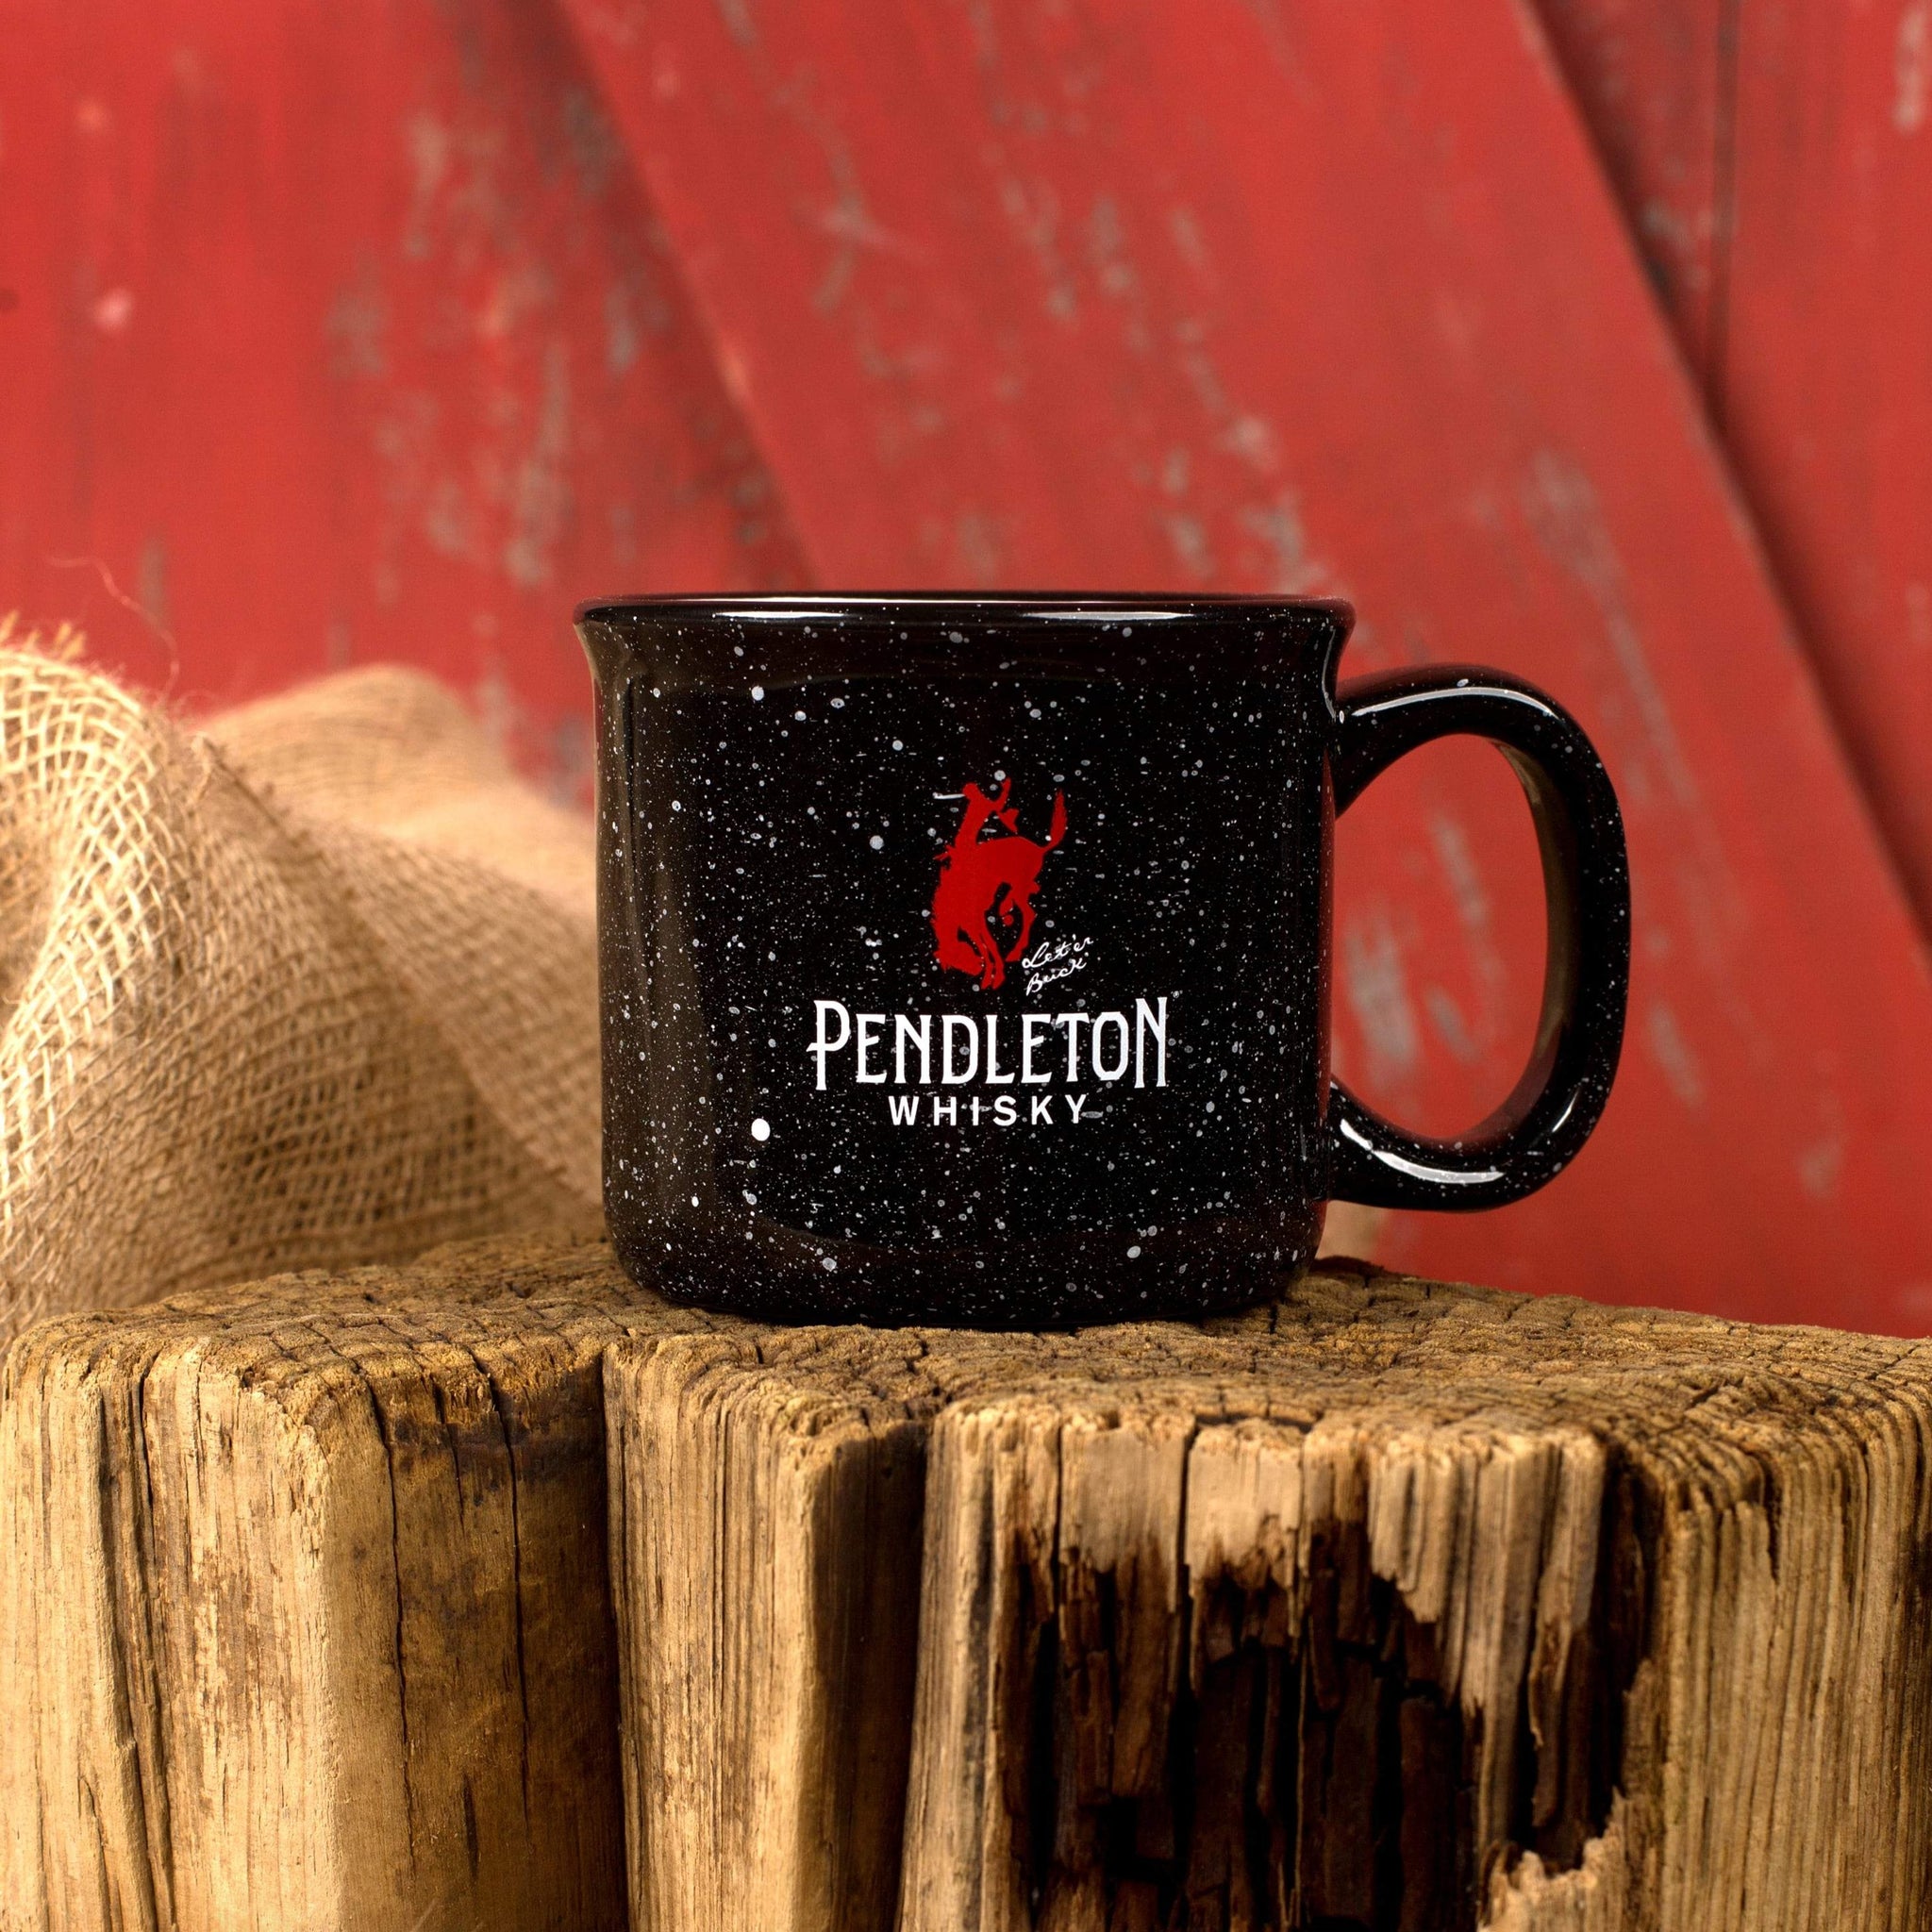 Pendleton Mugs